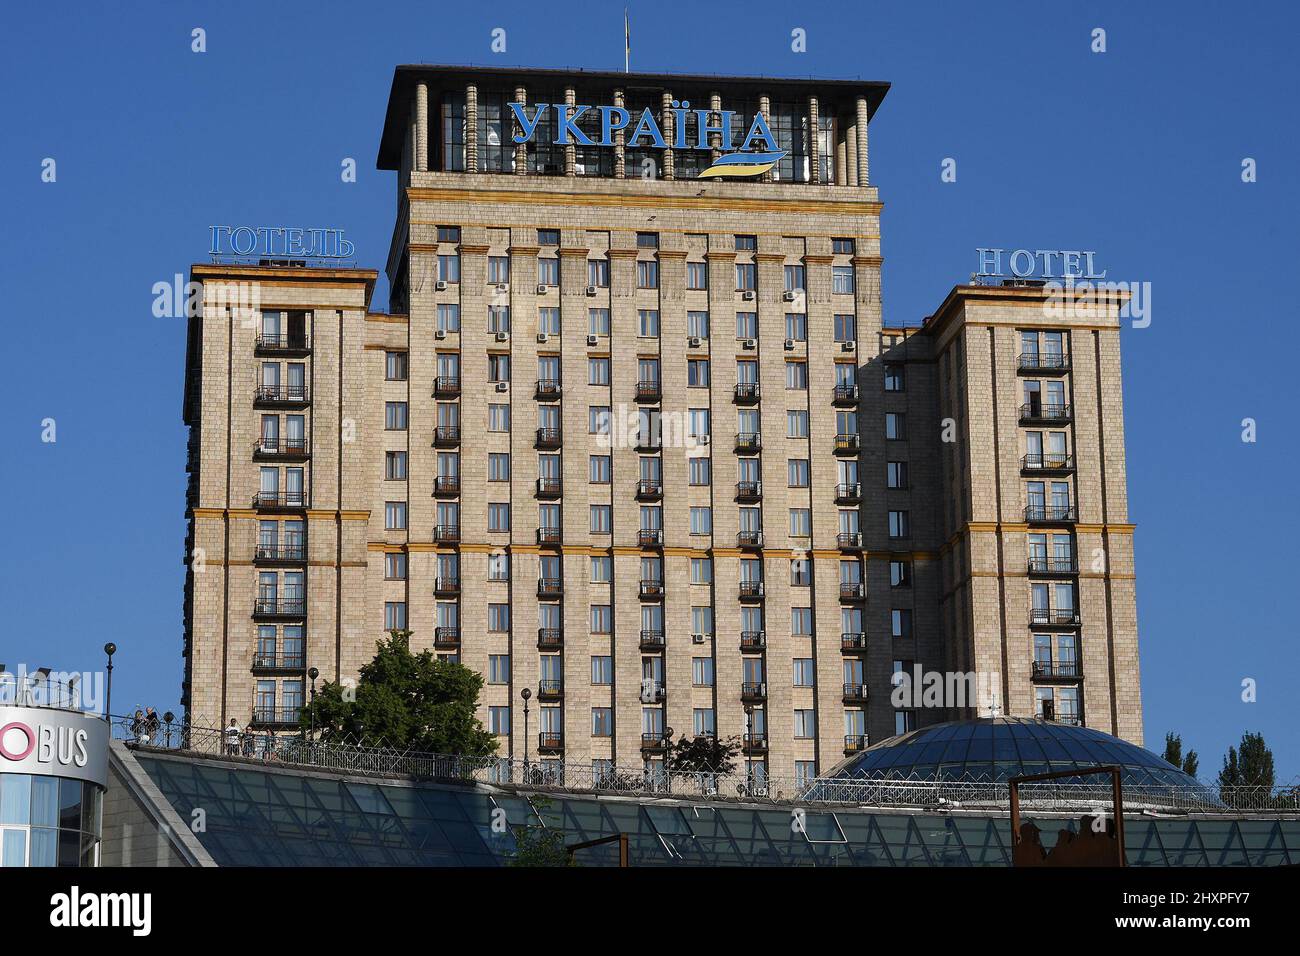 UKRAYINA HOTEL NEAR INDEPENDENCE SQUARE, KYIV, UKRAINE. Stock Photo